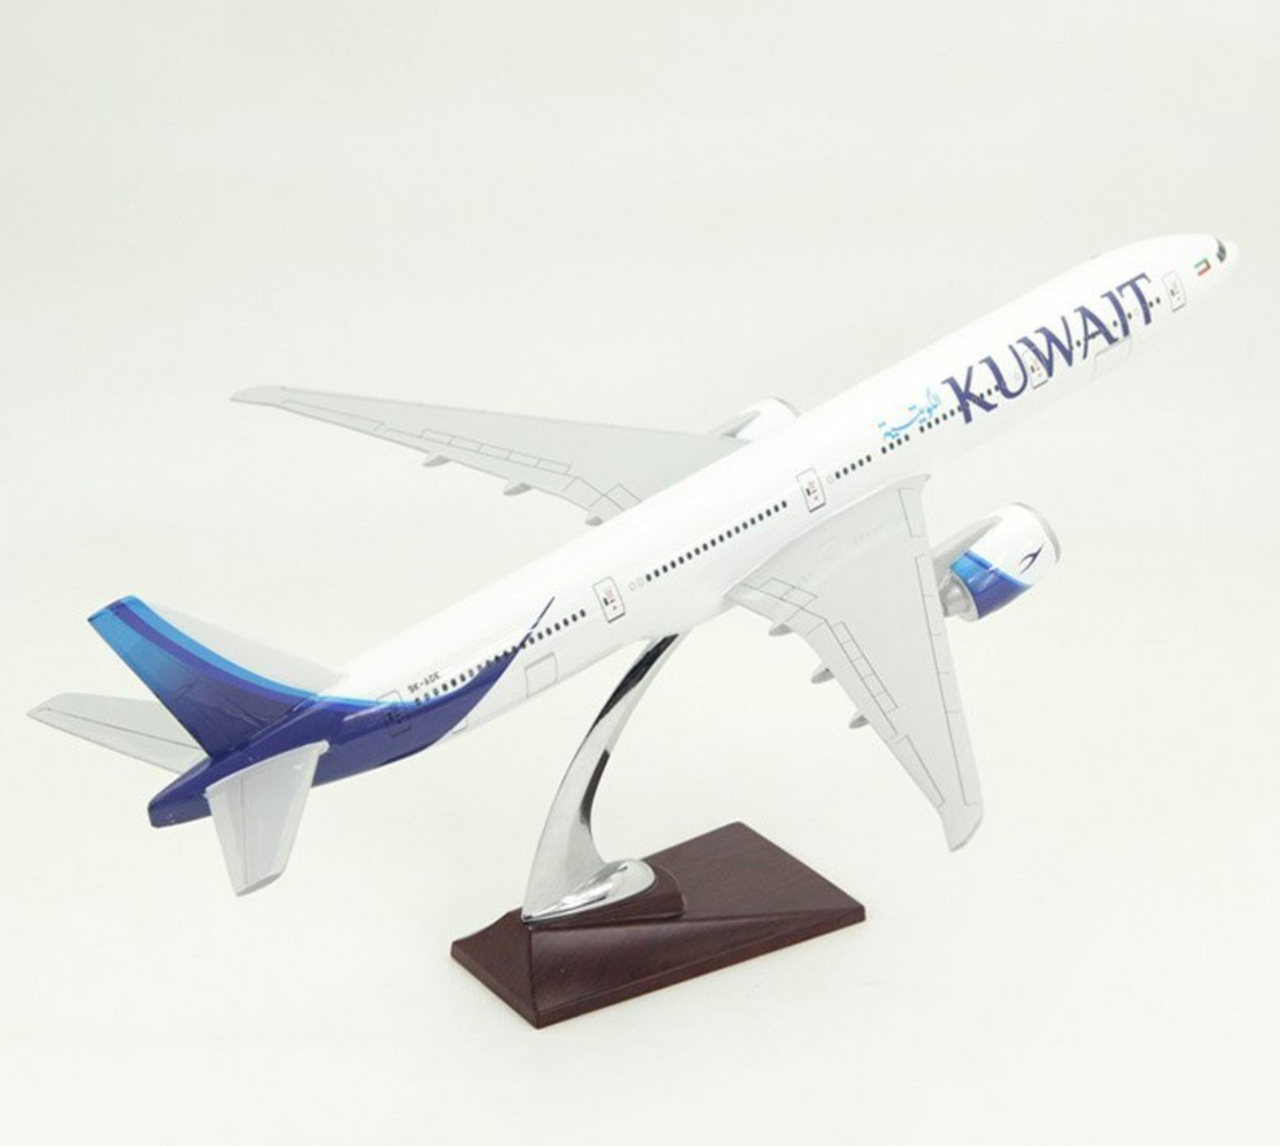 KUWAIT Airways Boeing 777 Airplane Model (Special 47CM)